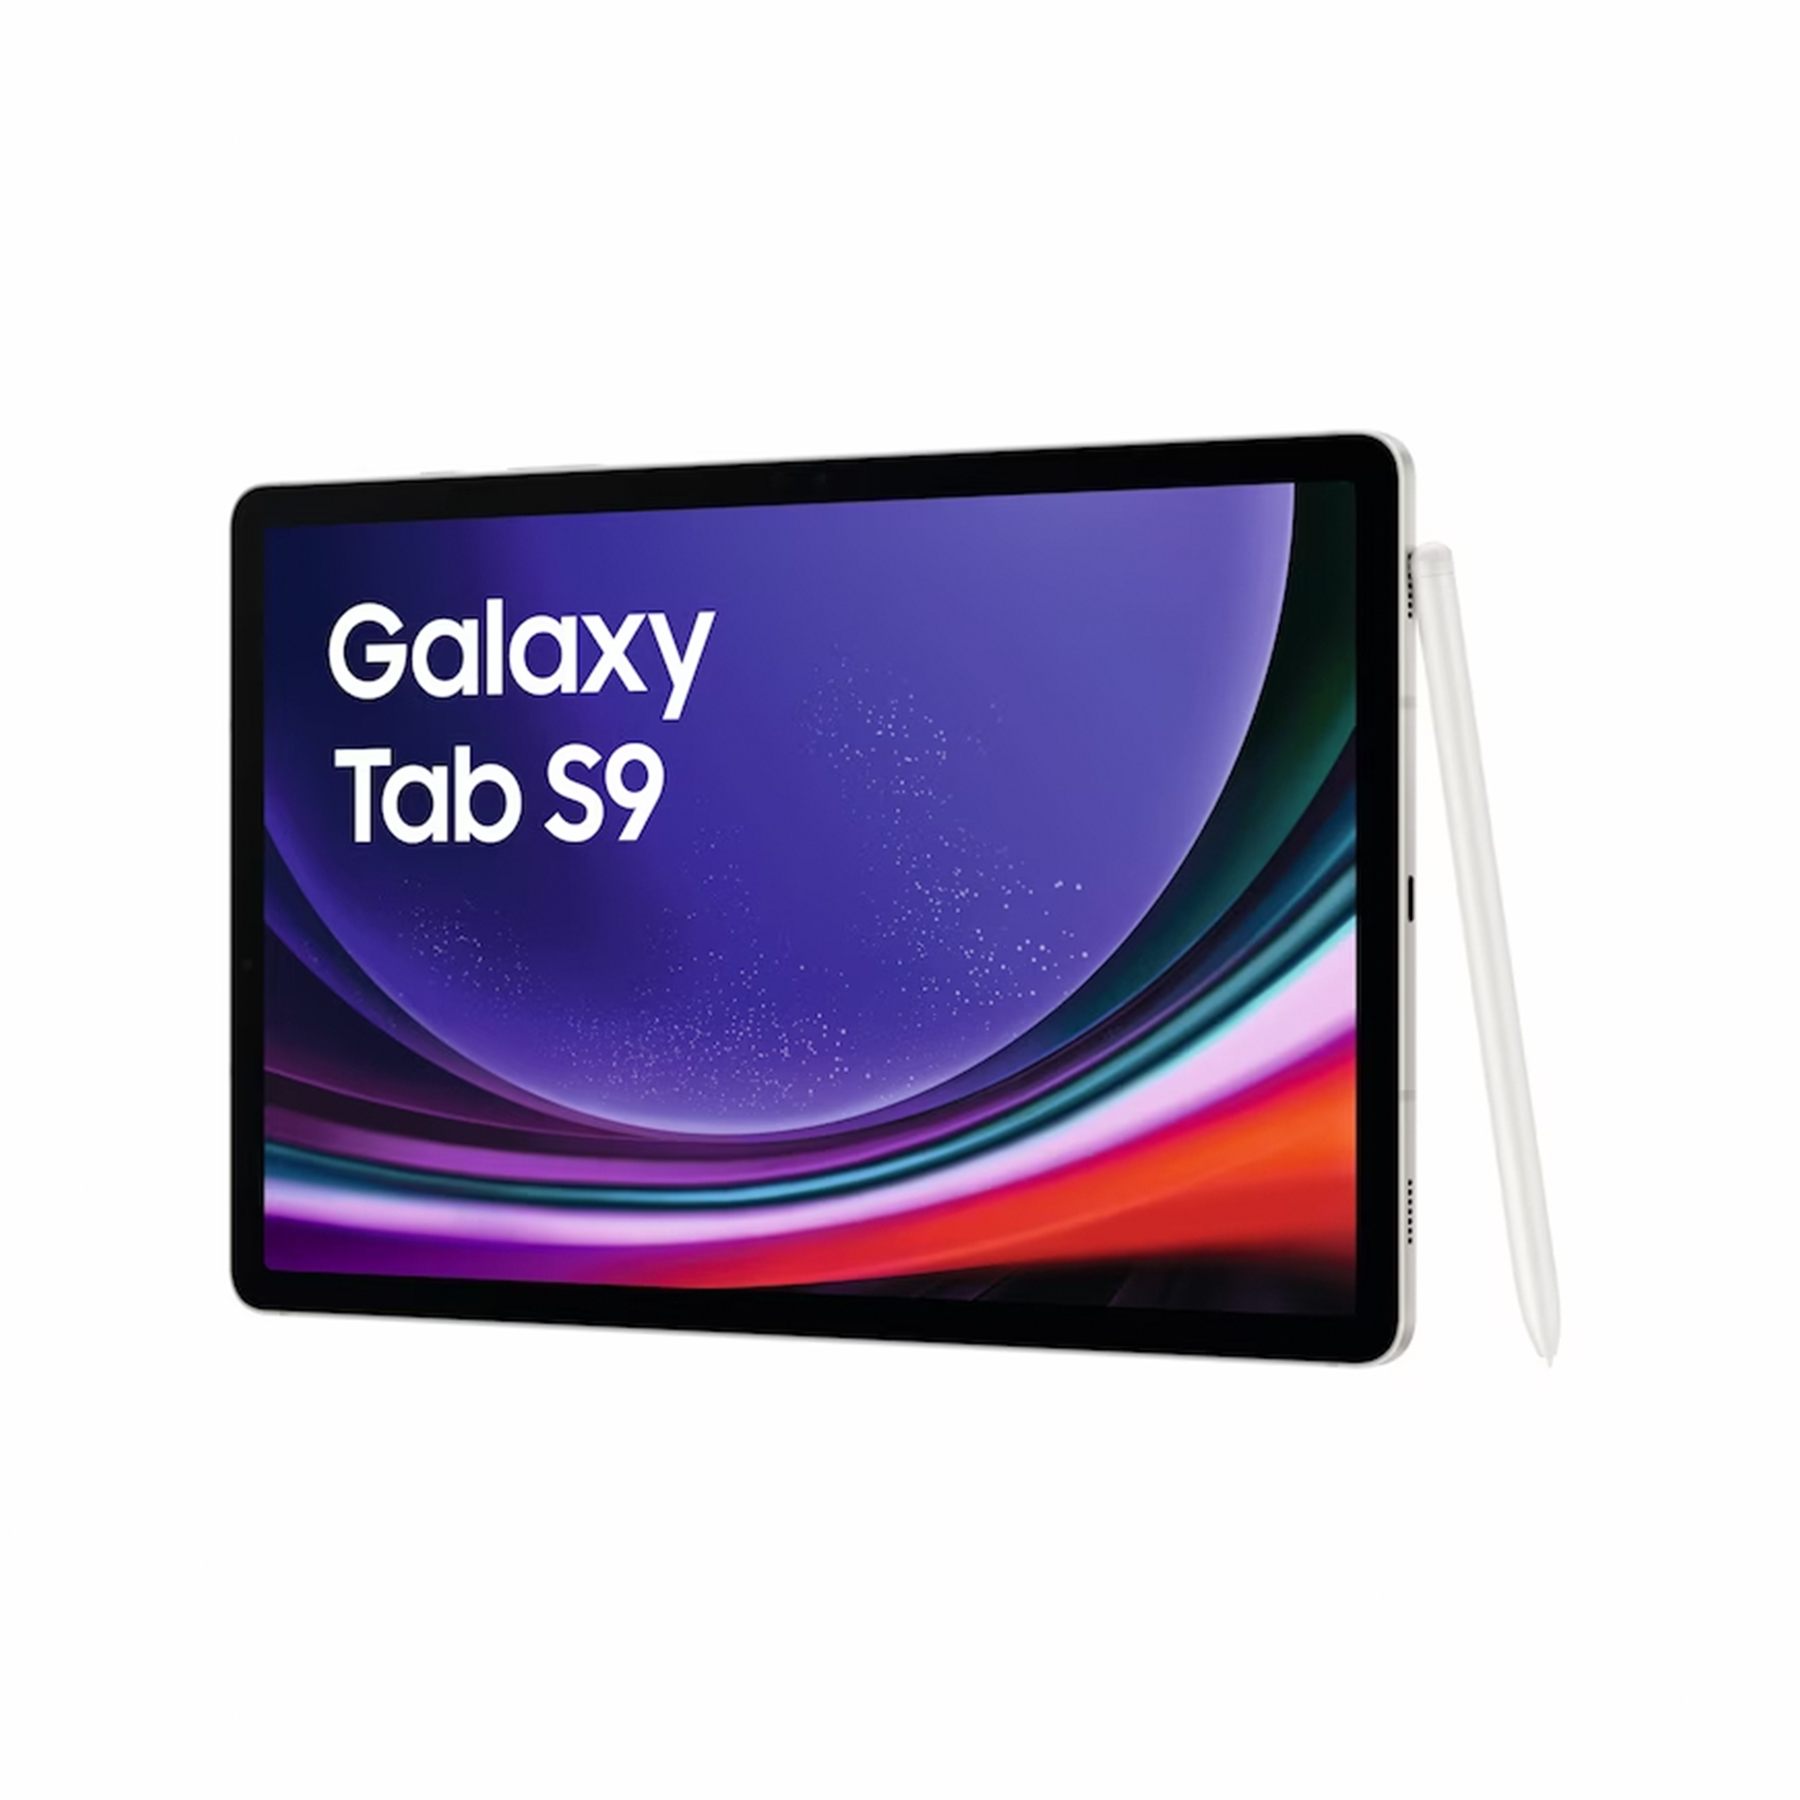 تبلت سامسونگ مدل Galaxy Tab S9 ظرفیت 256 گیگابایت و رم 12 گیگابایت به همراه قلم و کیبورد